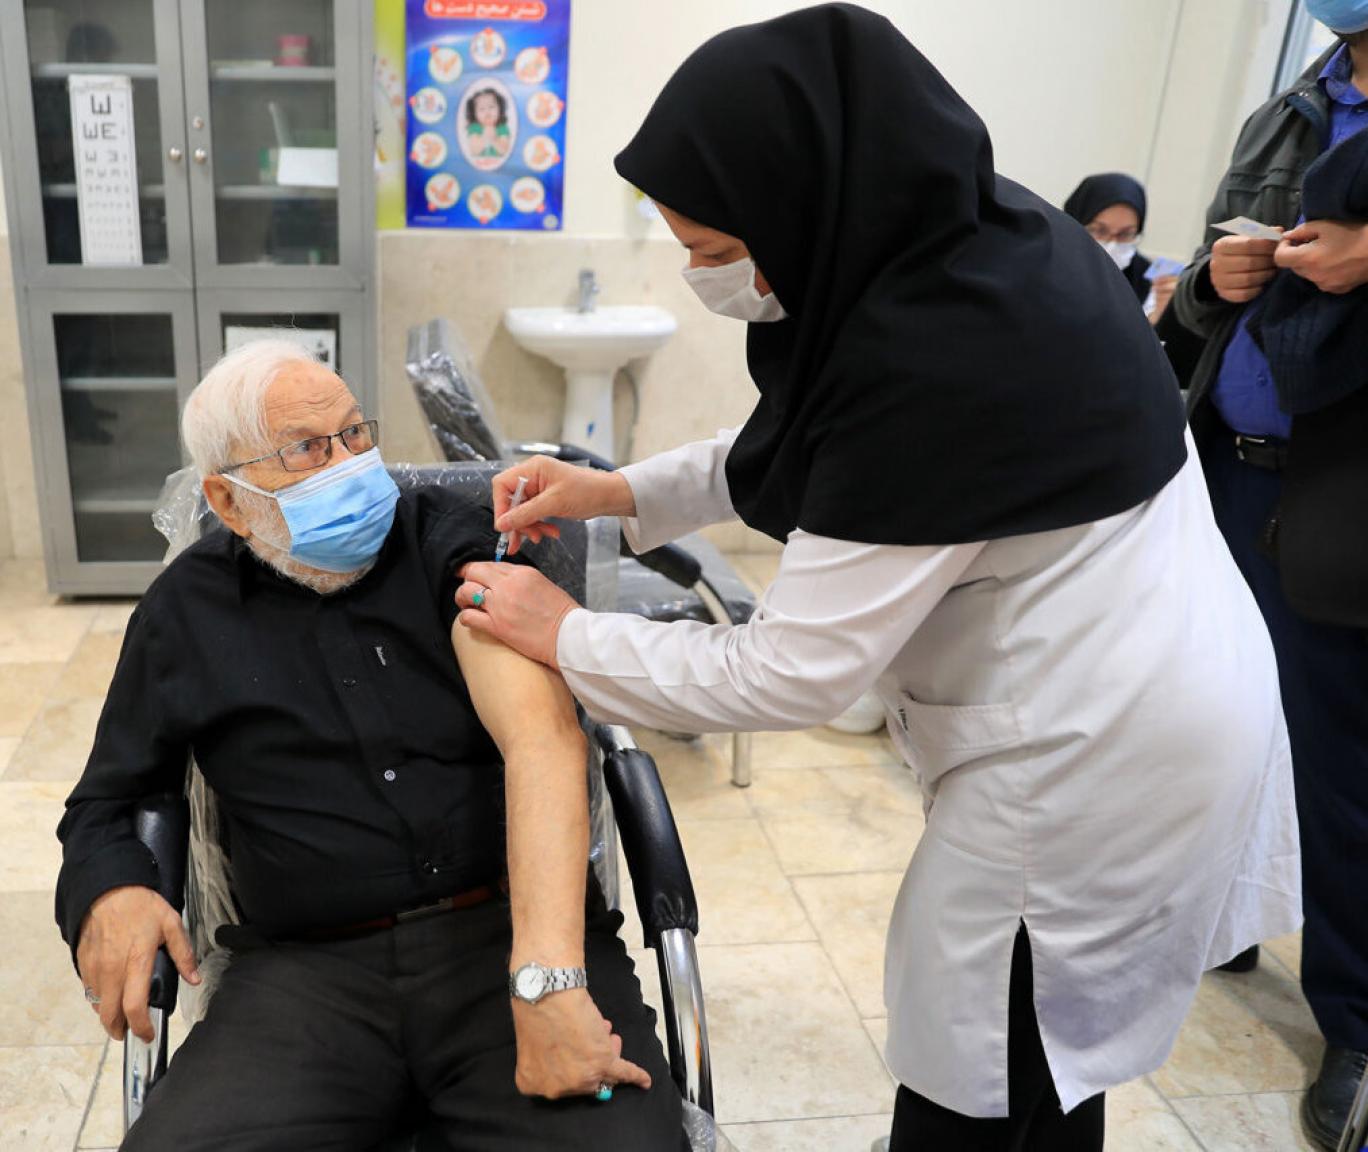 واکسیناسیون و نجات جان ۲۵۰ هزار ایرانی در سال/ ۲ سال و نیم مبارزه همزمان با «کرونا» و «تحریم دارو و واکسن»!